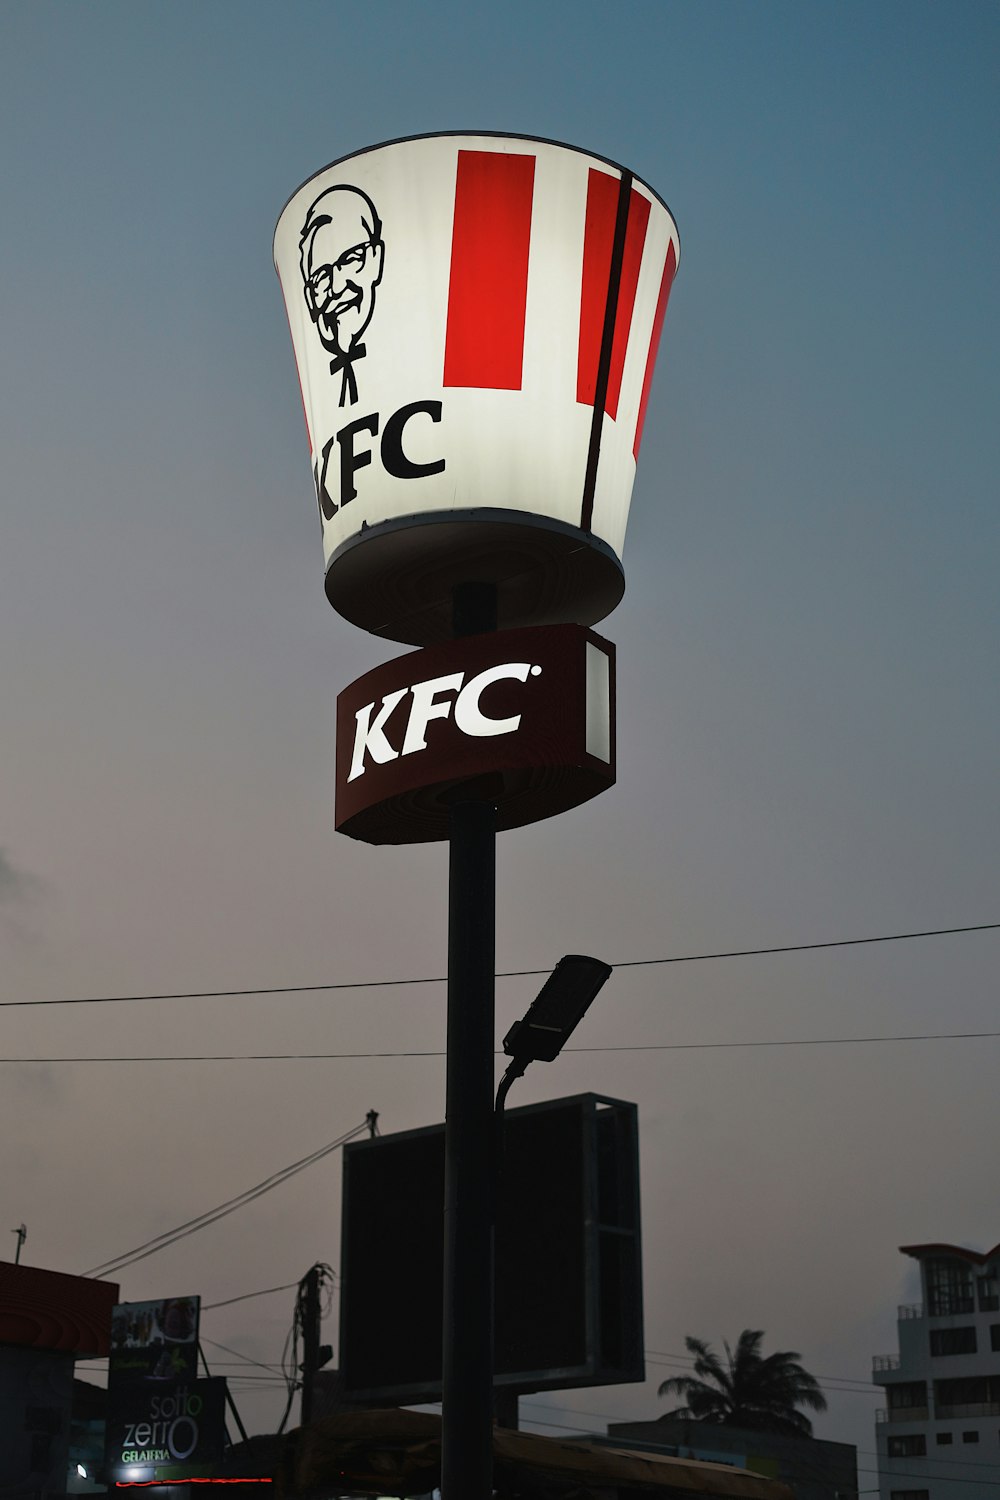 Ein KFC-Schild mit dem Gesicht eines Mannes darauf